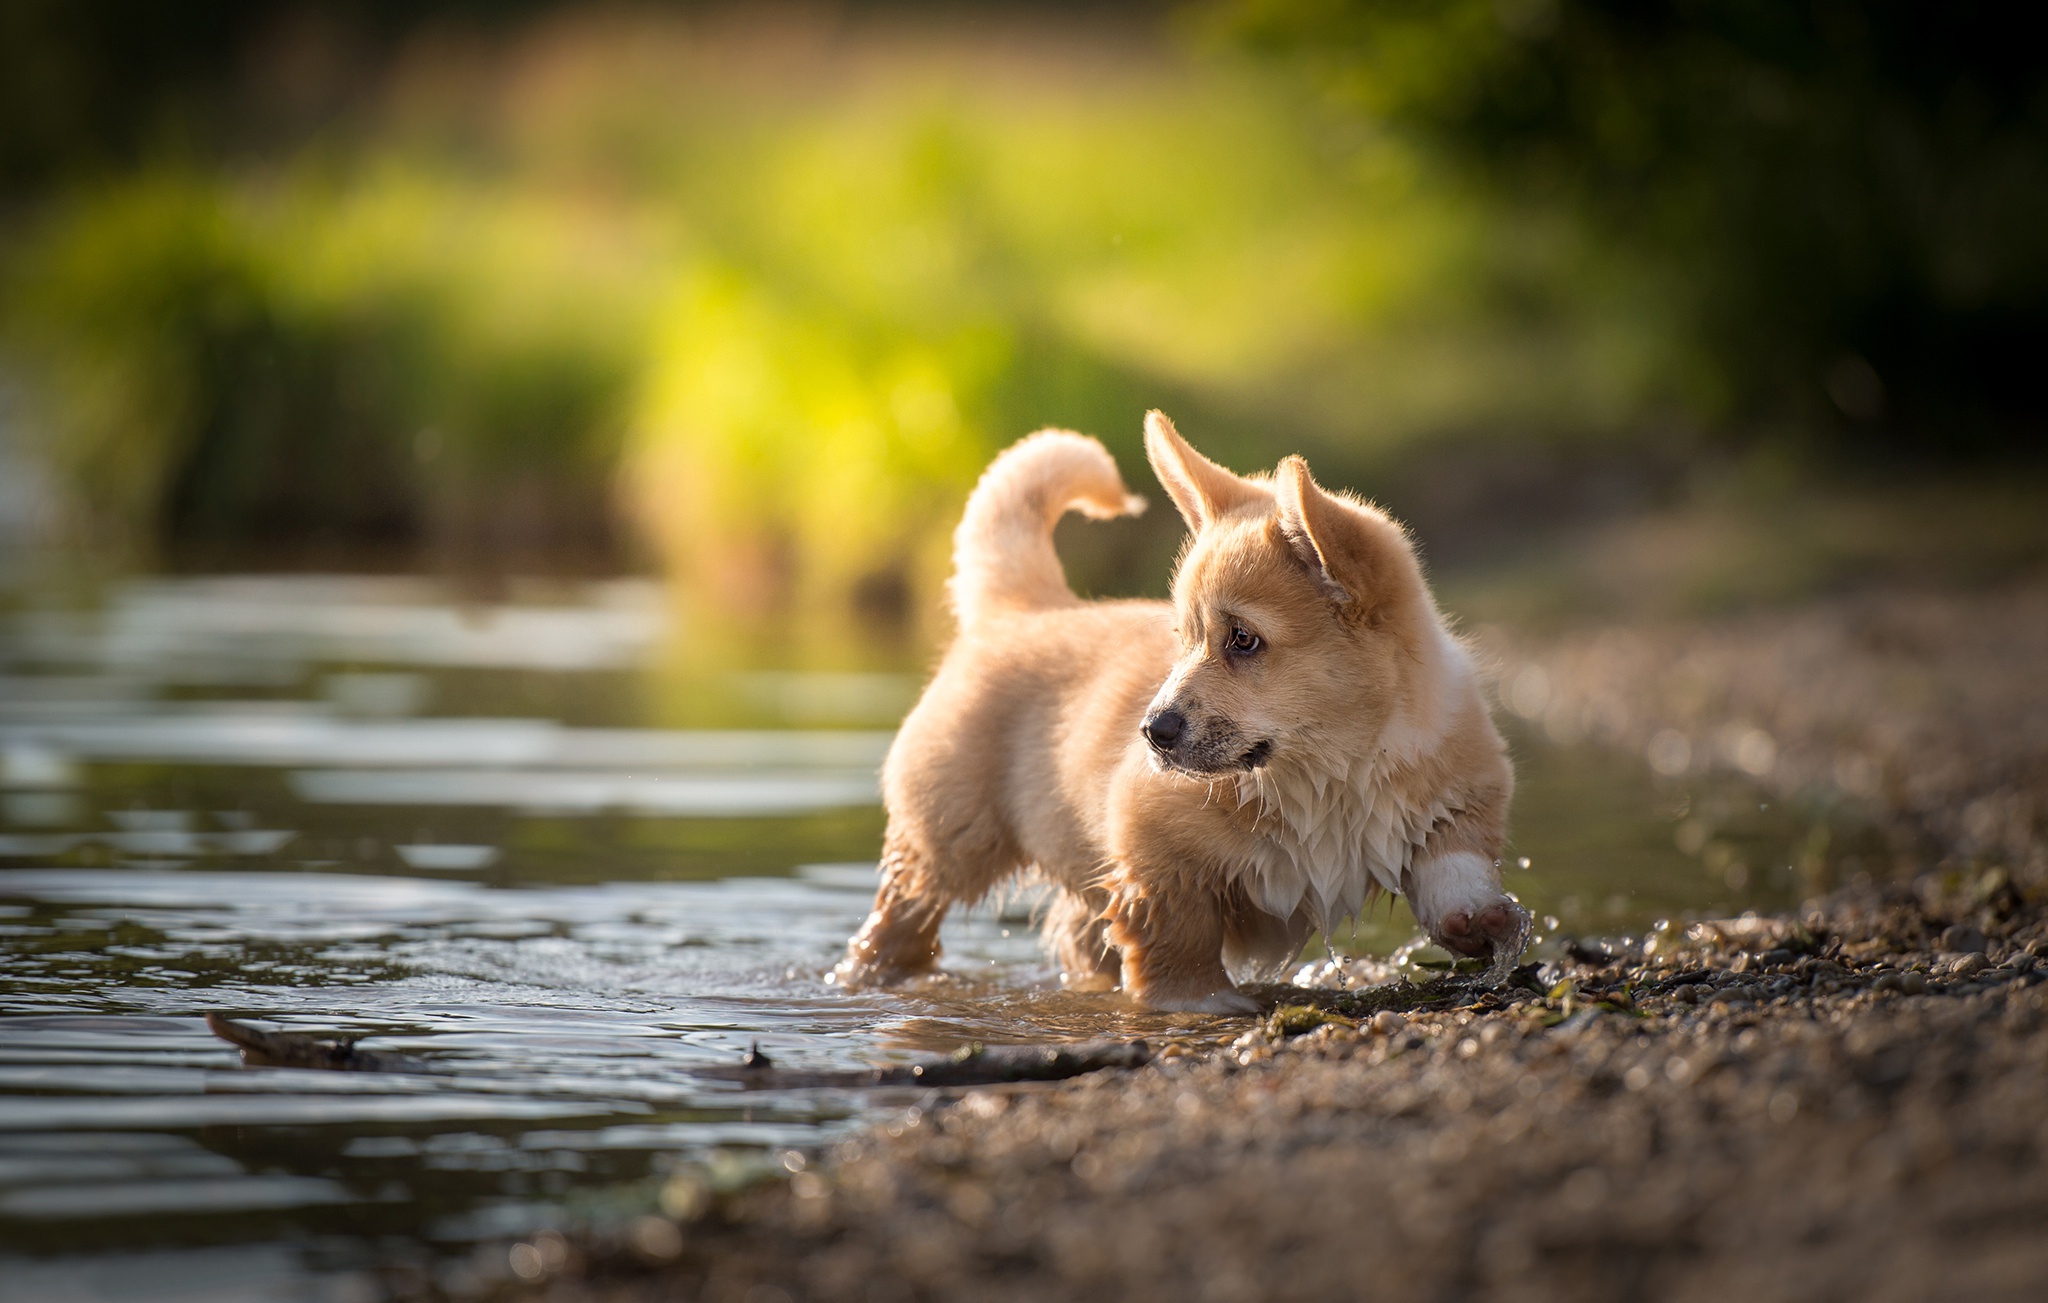 Baby Animal Corgi Dog Pet Puppy Water 2048x1303